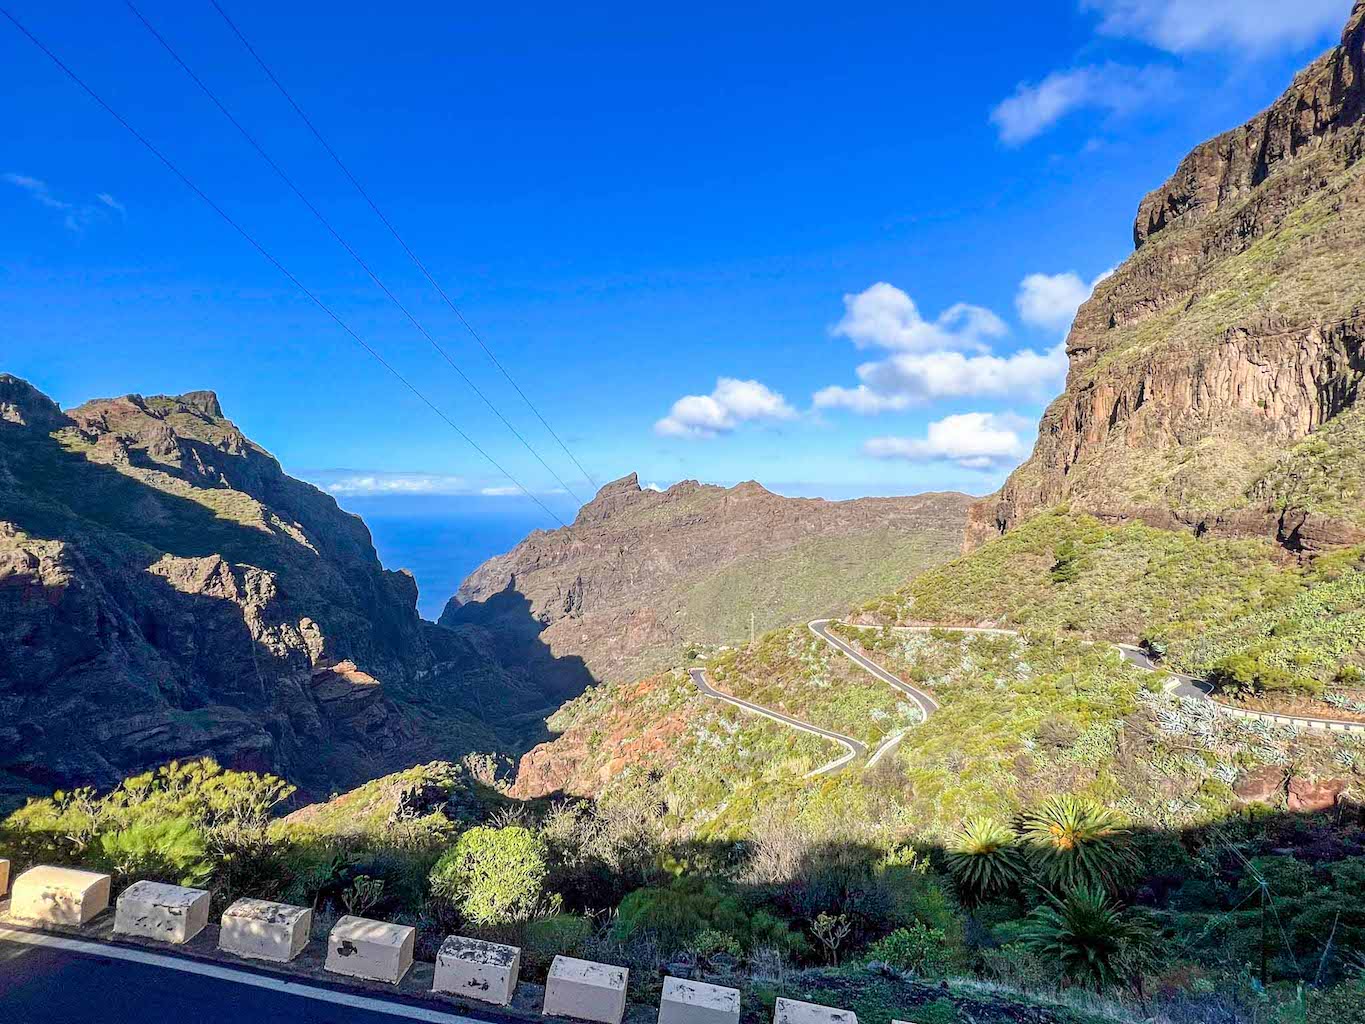 Tenerife road trip